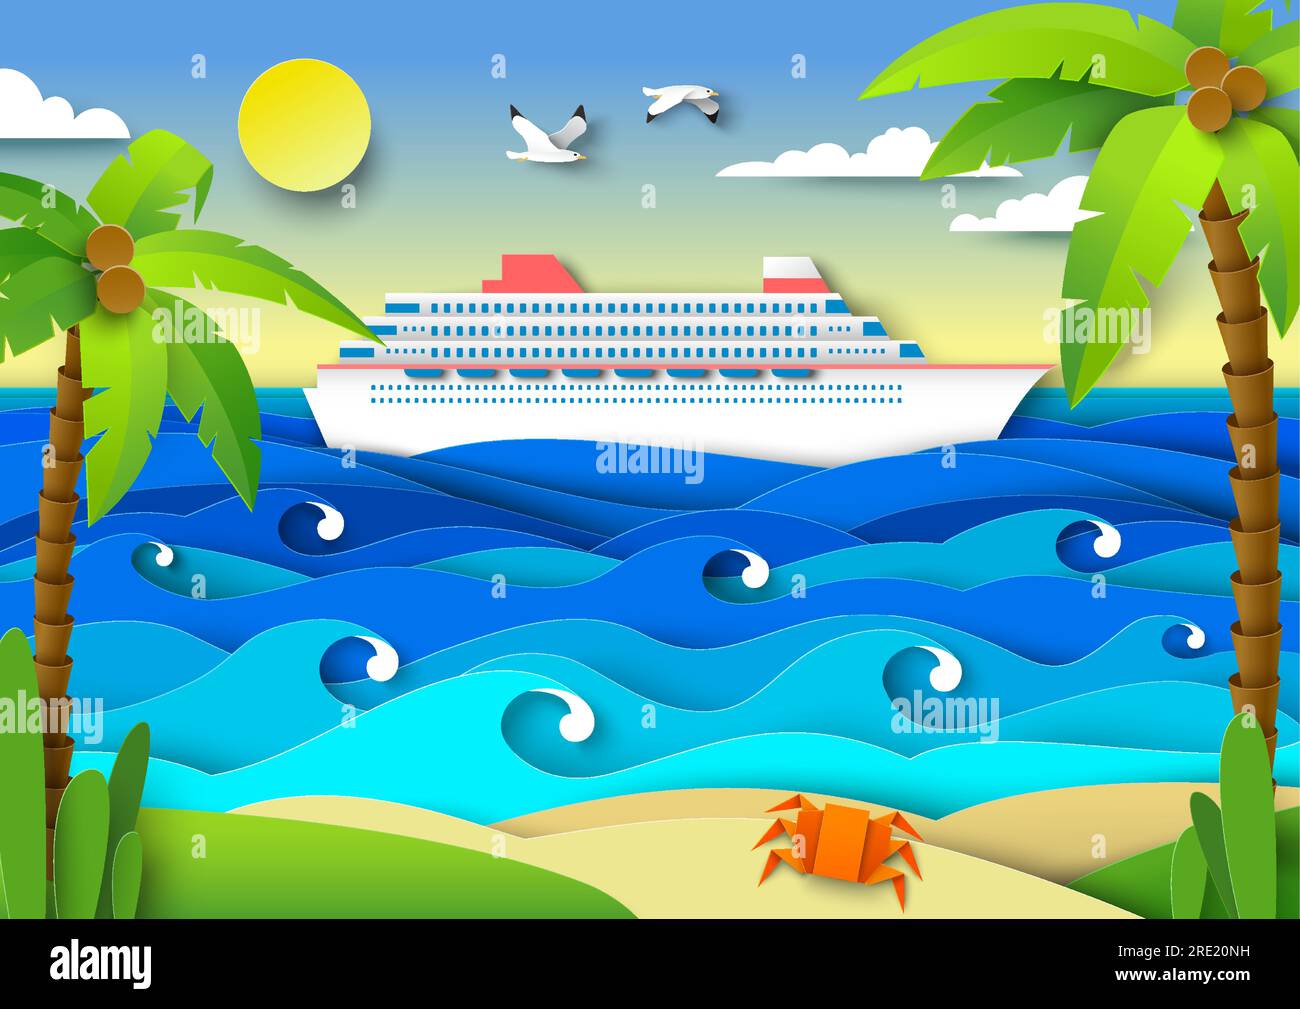 Voyage en mer sur l'illustration vectorielle de paquebot de croisière de luxe dans le style de papier découpé Illustration de Vecteur